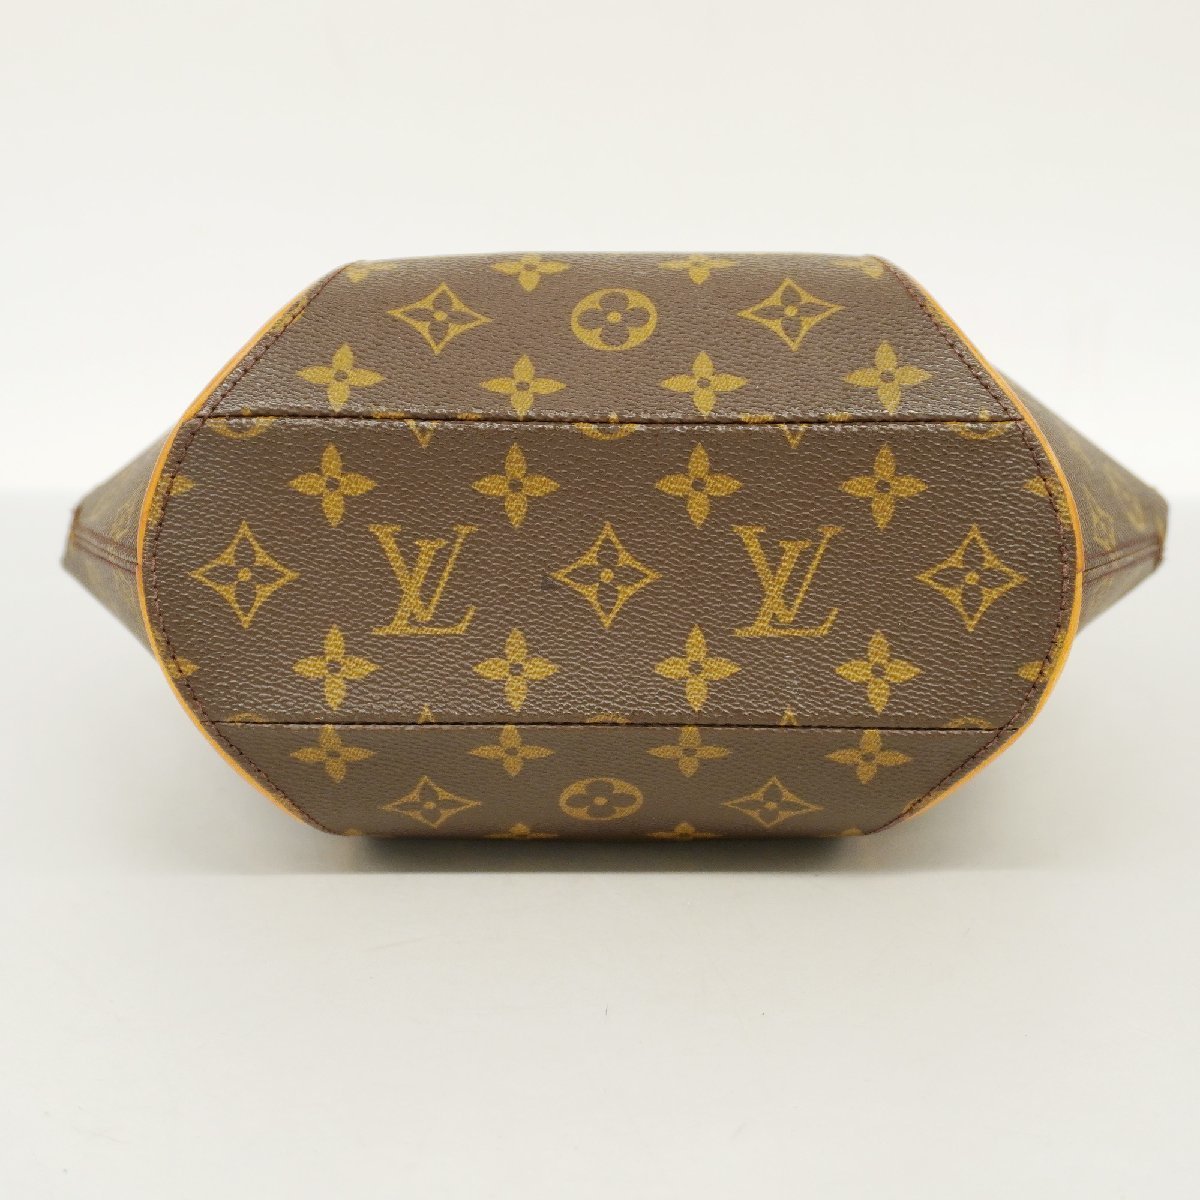 Louis Vuitton, Bags, 0 Authentic Louis Vuitton Ellipse Pm